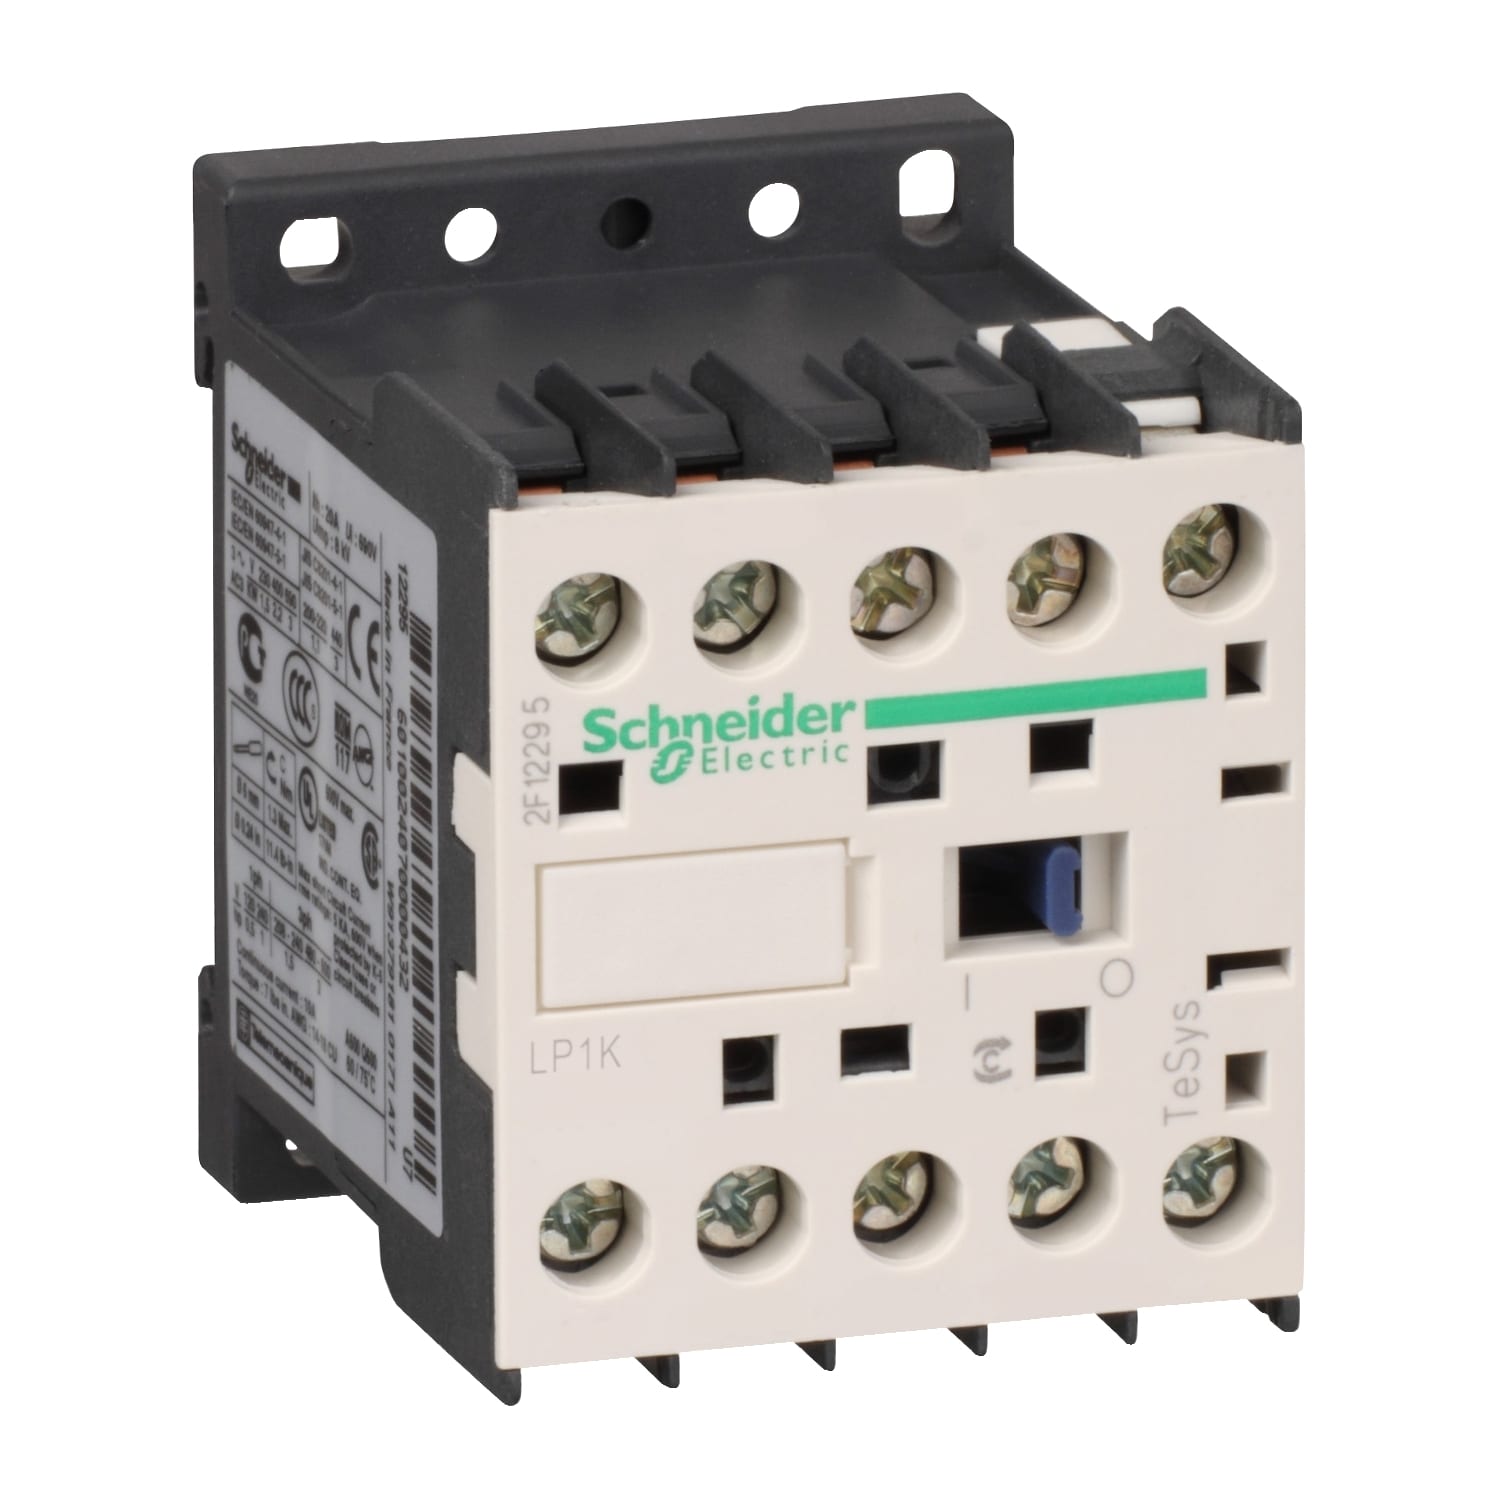 Schneider Electric - TeSys LP1K - contacteur - 3P - AC-3 440V - 6A - bobine 12Vcc